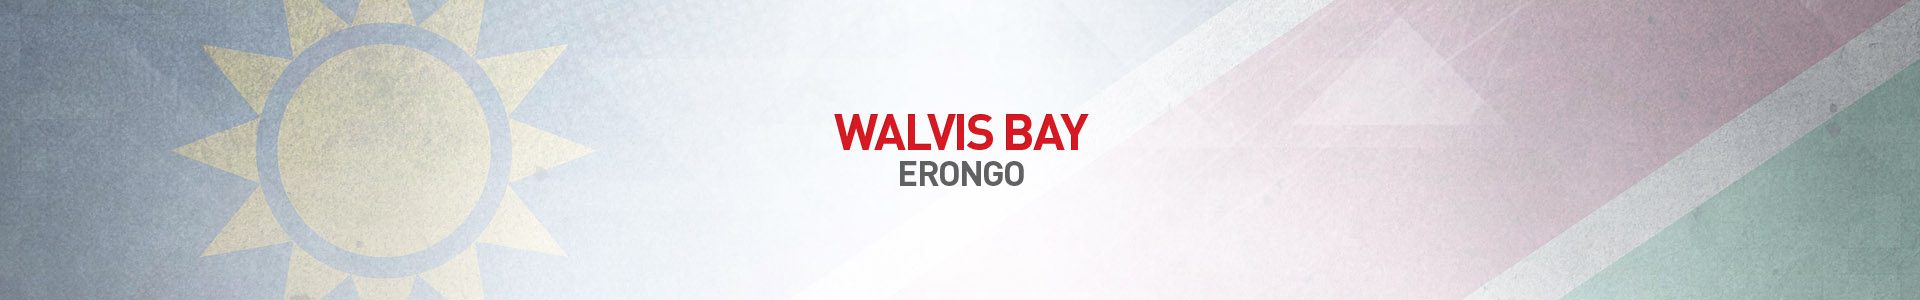 Topo-Cidades-Walvis-Bay-SBA